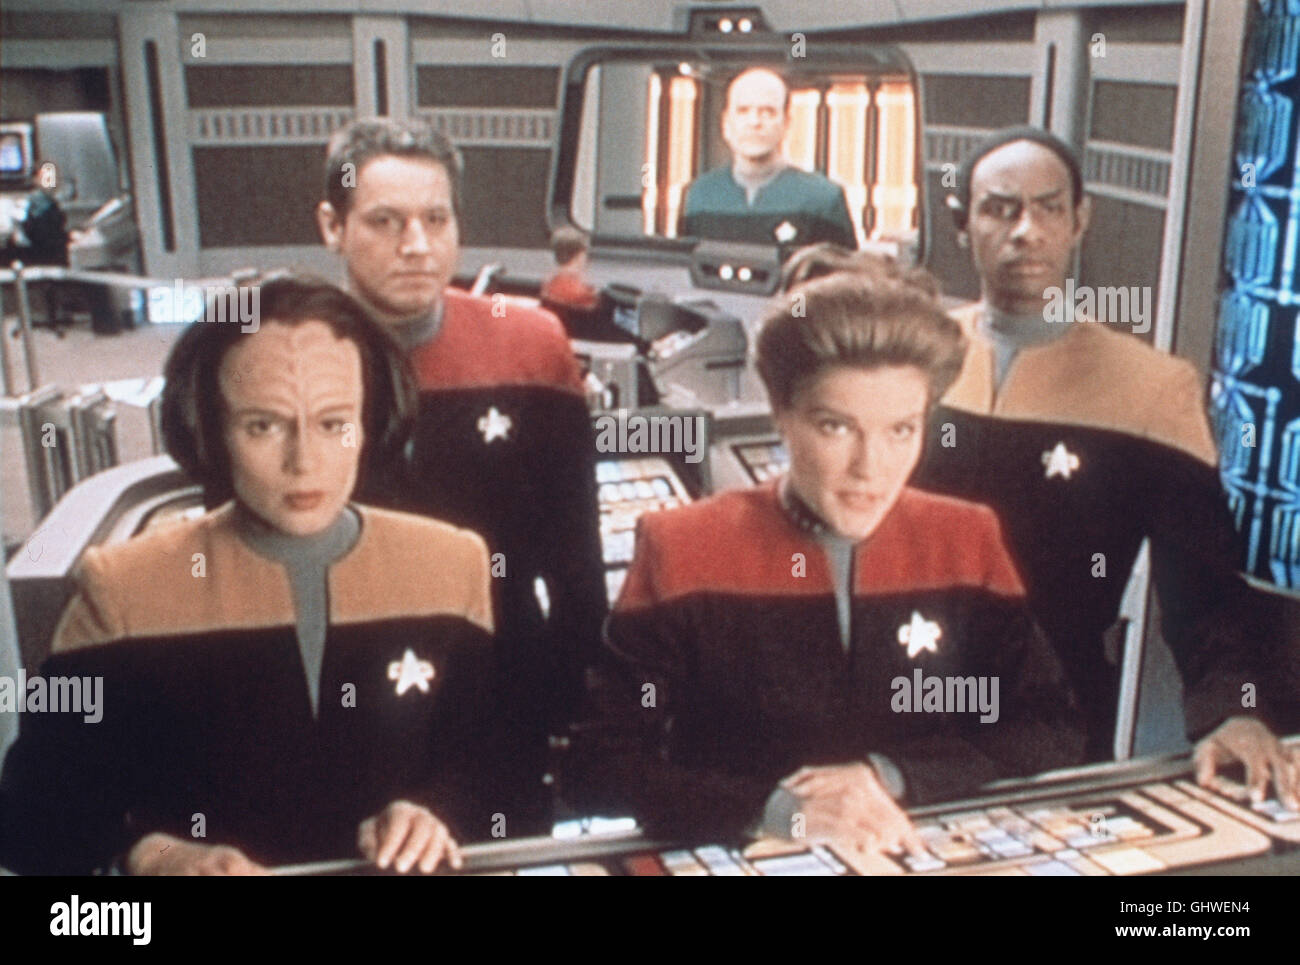 RAUMSCHIFF - STAR TREK VOYAGER- durch einen Raumspalt taucht ein Raumschiff auf die Voyer, das zu zerstören droht. Voir mit ROXANN DAWSON-BIGGS, ROBERT BELTRAN, Kate Mulgrew, TIM RUSS Regie : James L. Conway aka. Star Trek : Voyager Banque D'Images